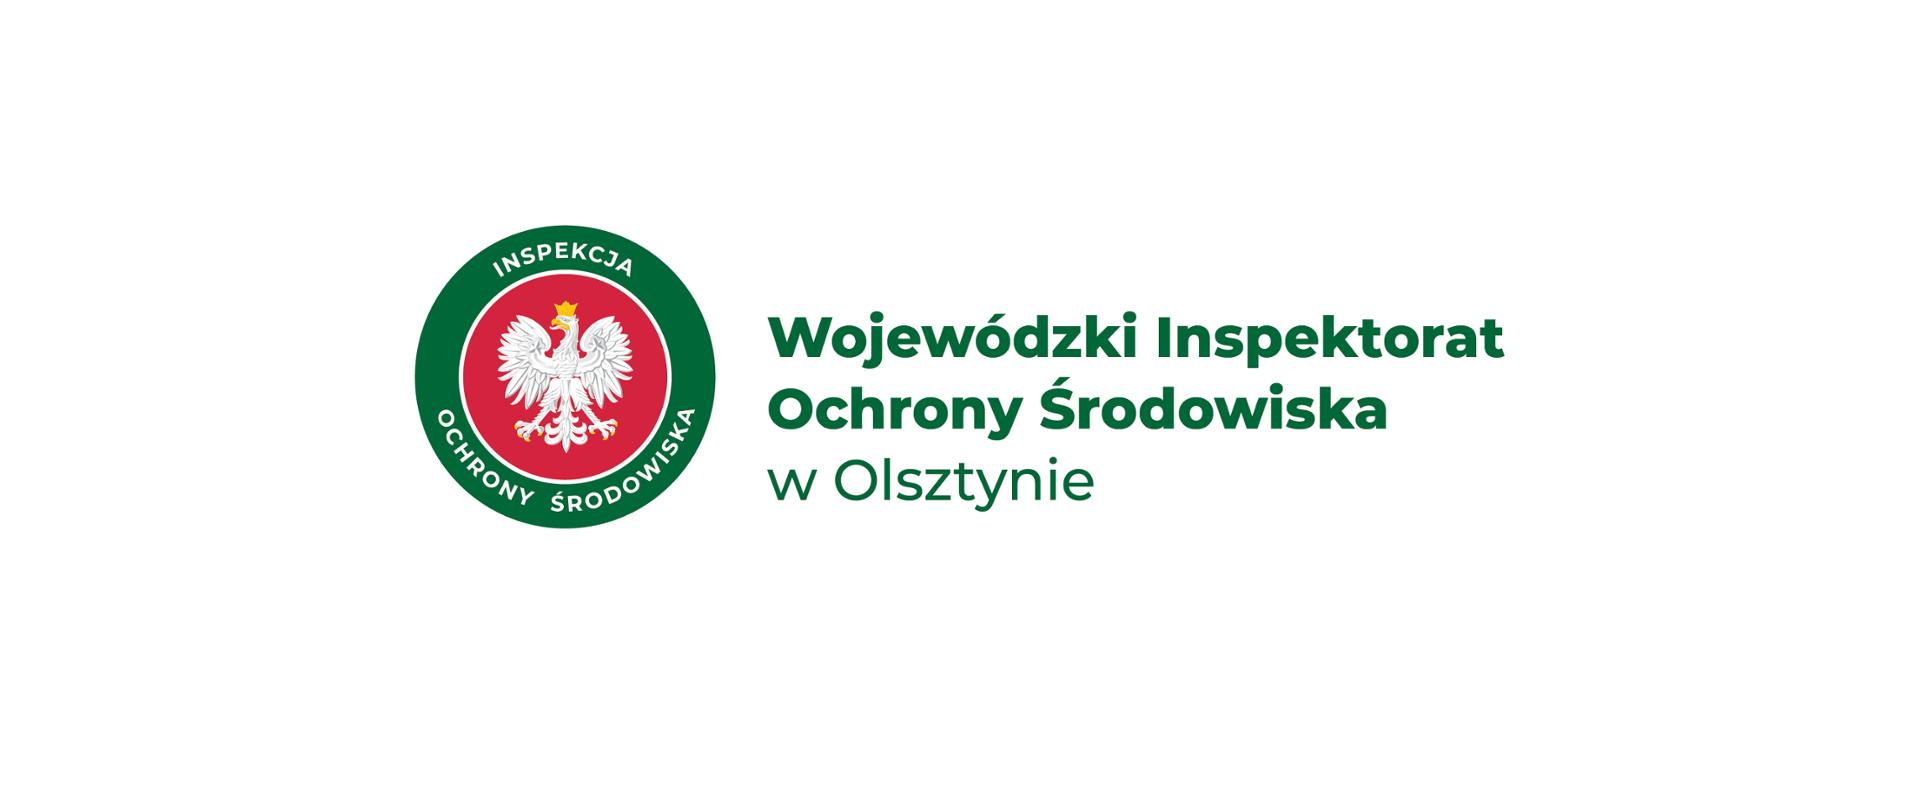 Logo Inspekcji Ochrony Środowiska z orłem w tle. Obok zielony napis Wojewódzki Inspektorat Ochrony Środowiska w Olsztynie